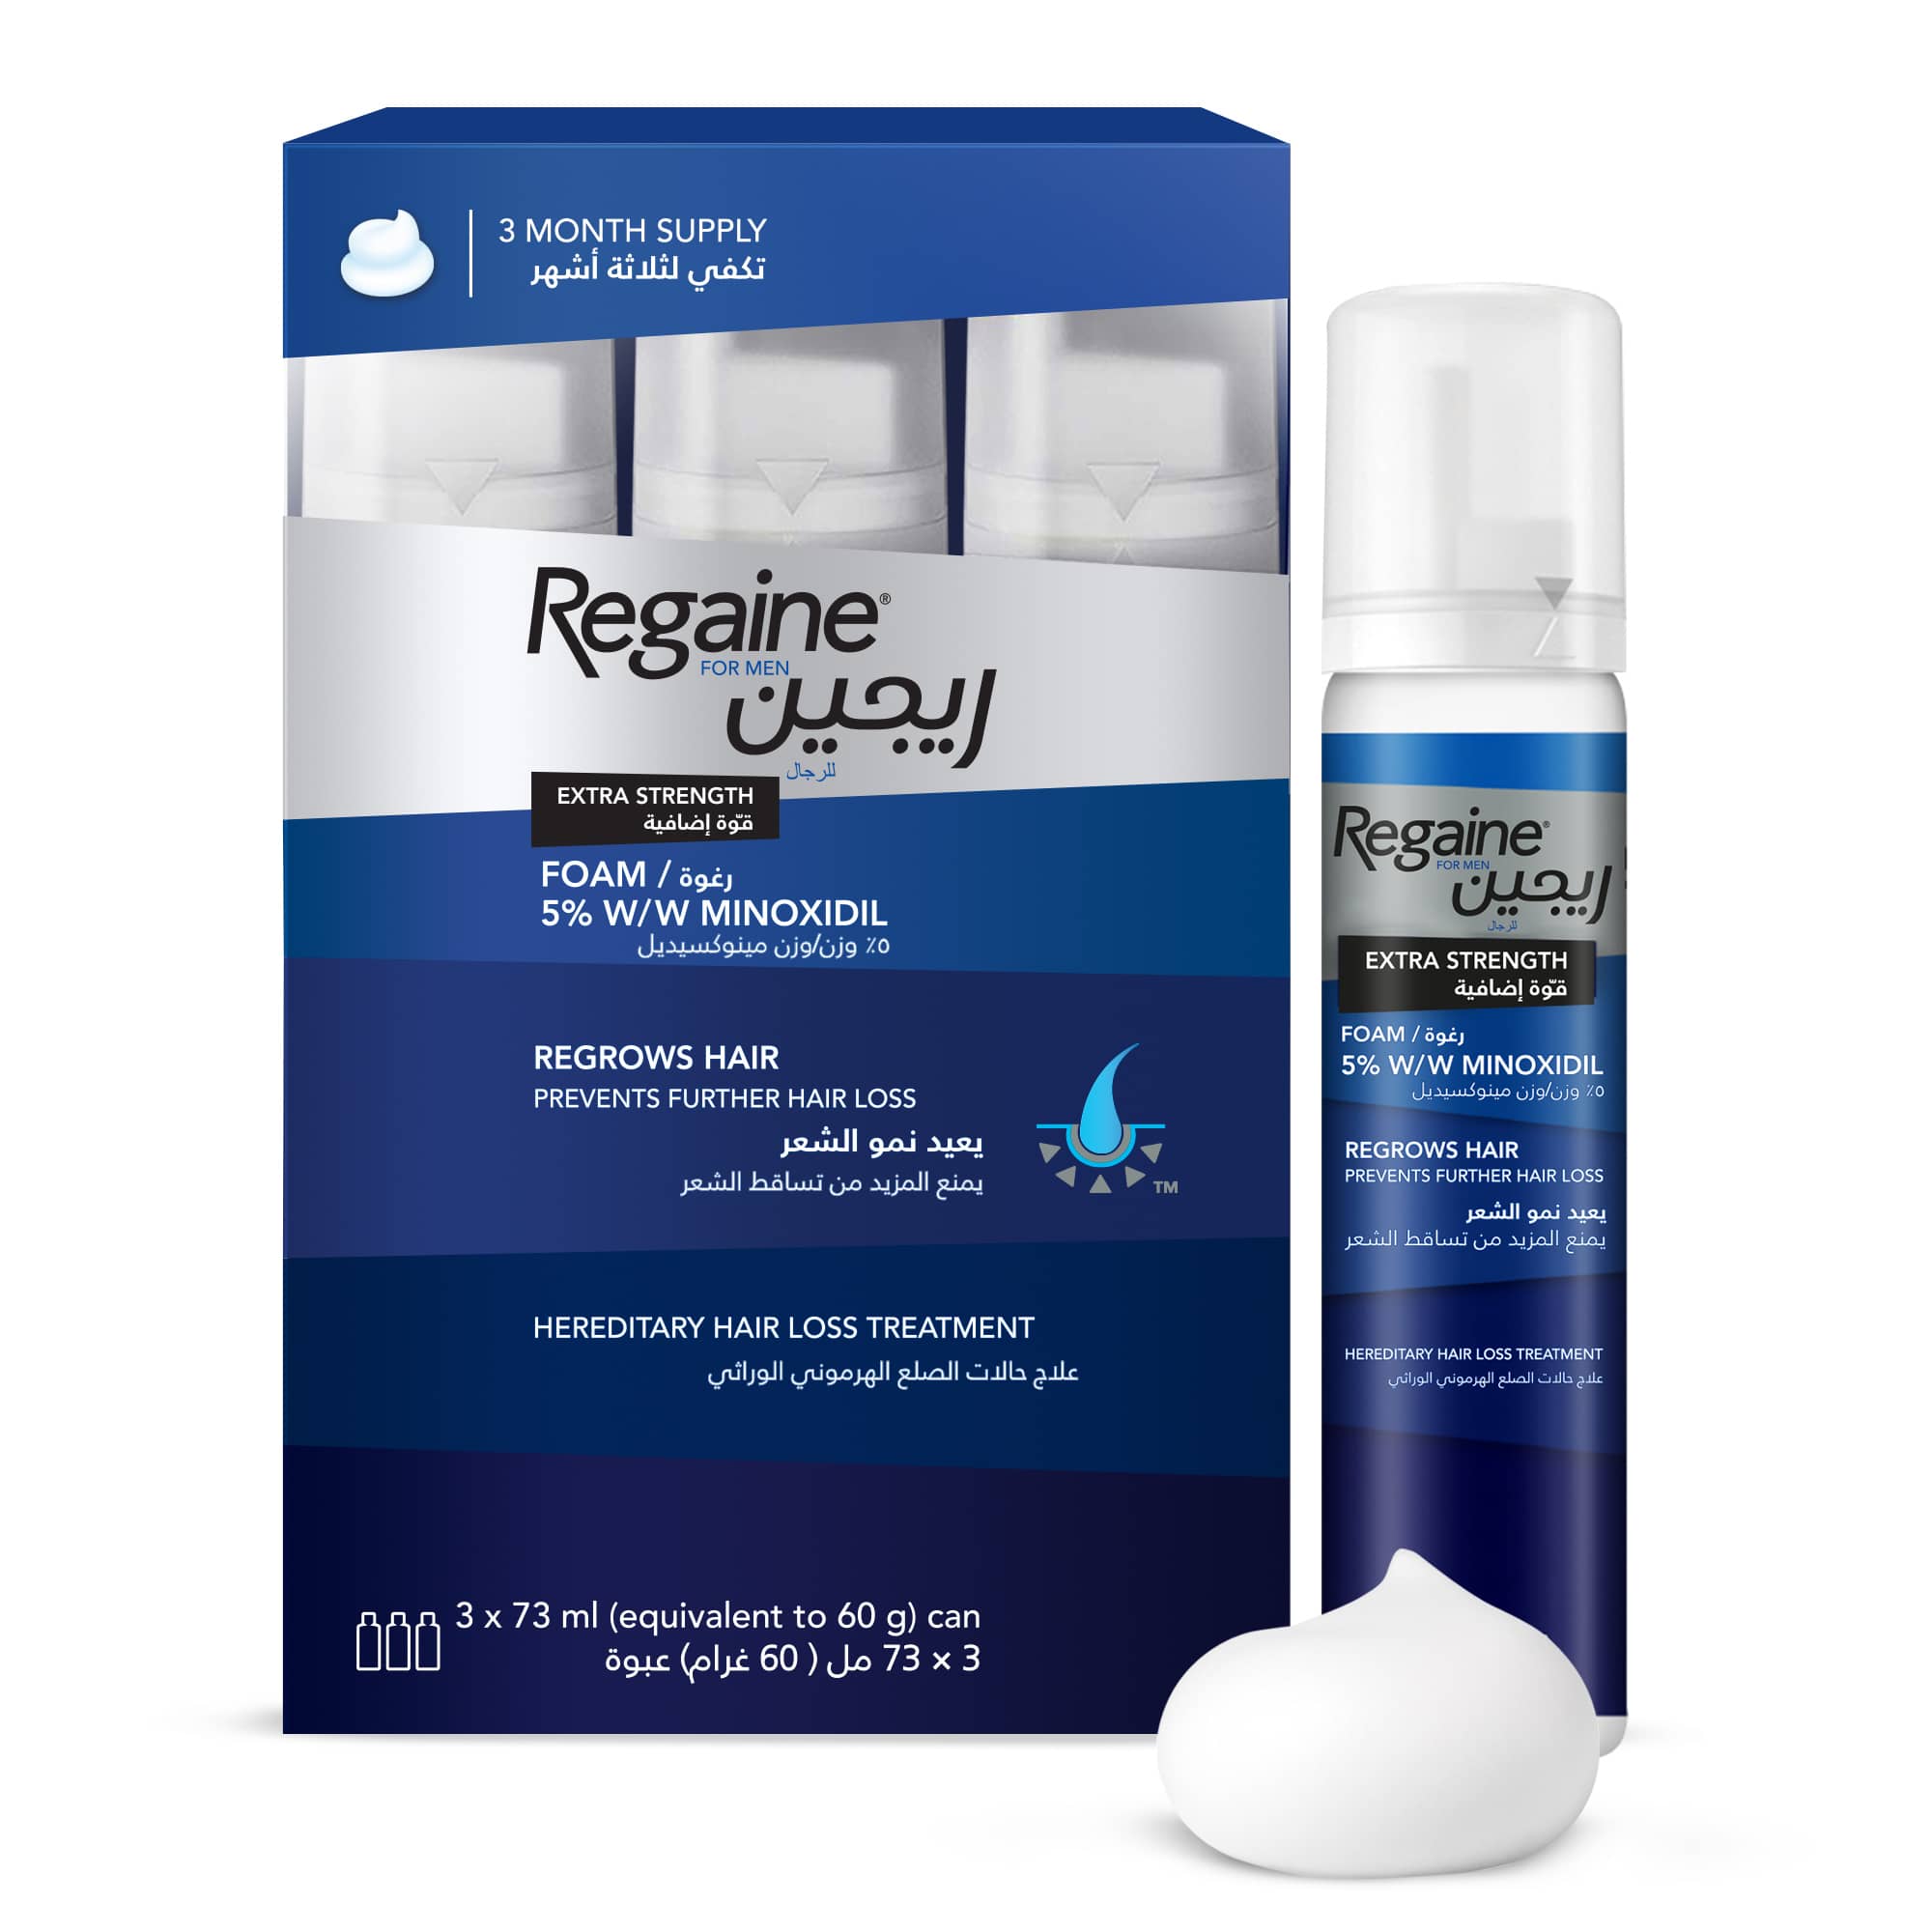 Regaine®: Hair Regrowth Treatments & Hair Loss Solutions